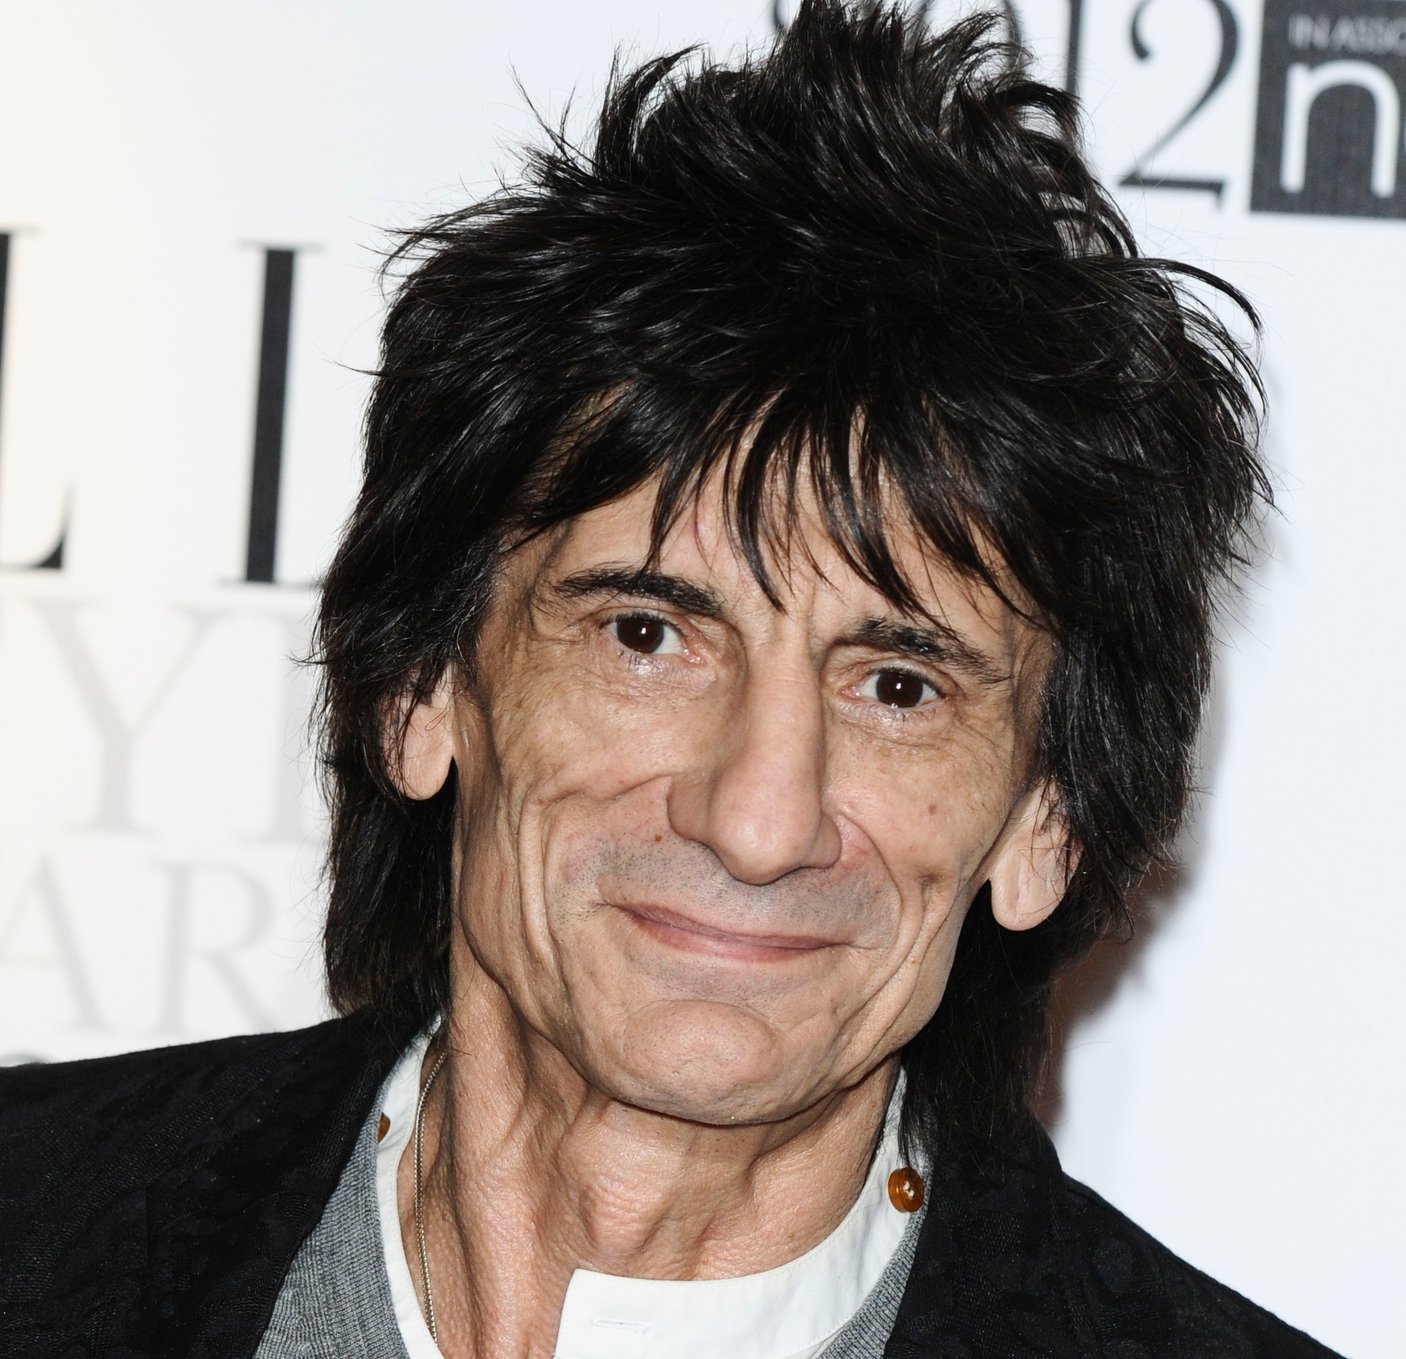 También ha grabado junto a Mick Jagger nuevo material para la reedición de Tattoo You de los Rolling Stones